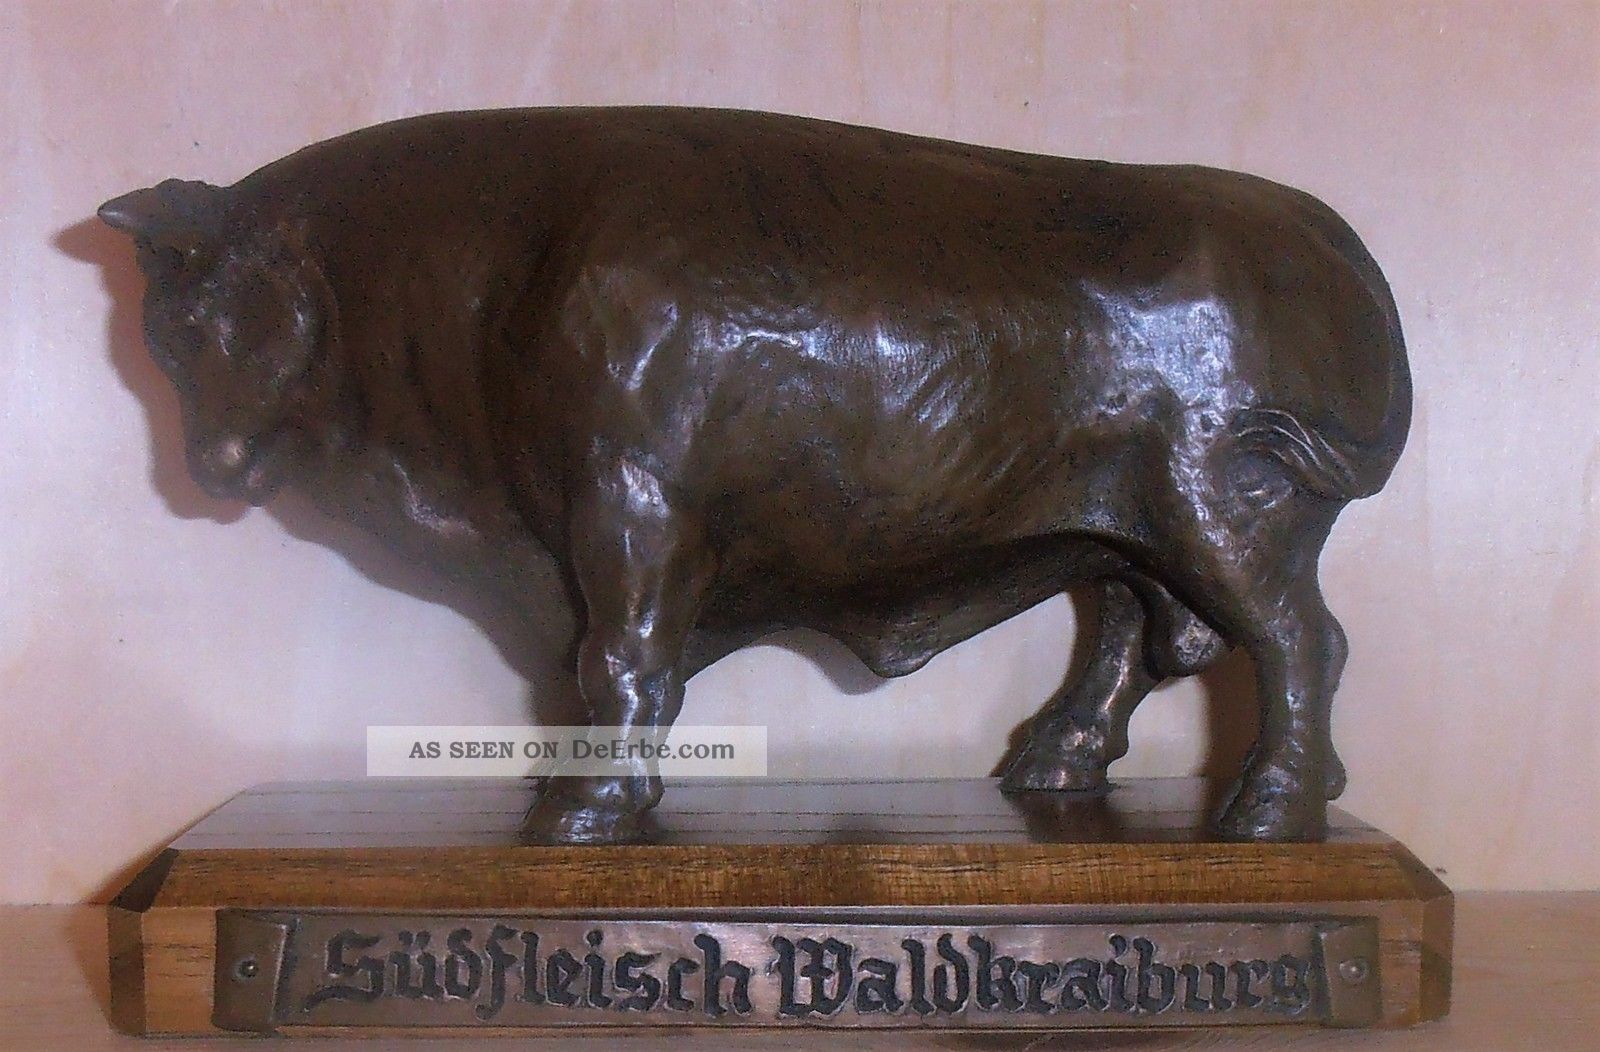 Südfleisch Waldkraiburg (stier - Rind - Ochse - Bulle) Skulptur Auf Sockel 1974 Metallobjekte Bild